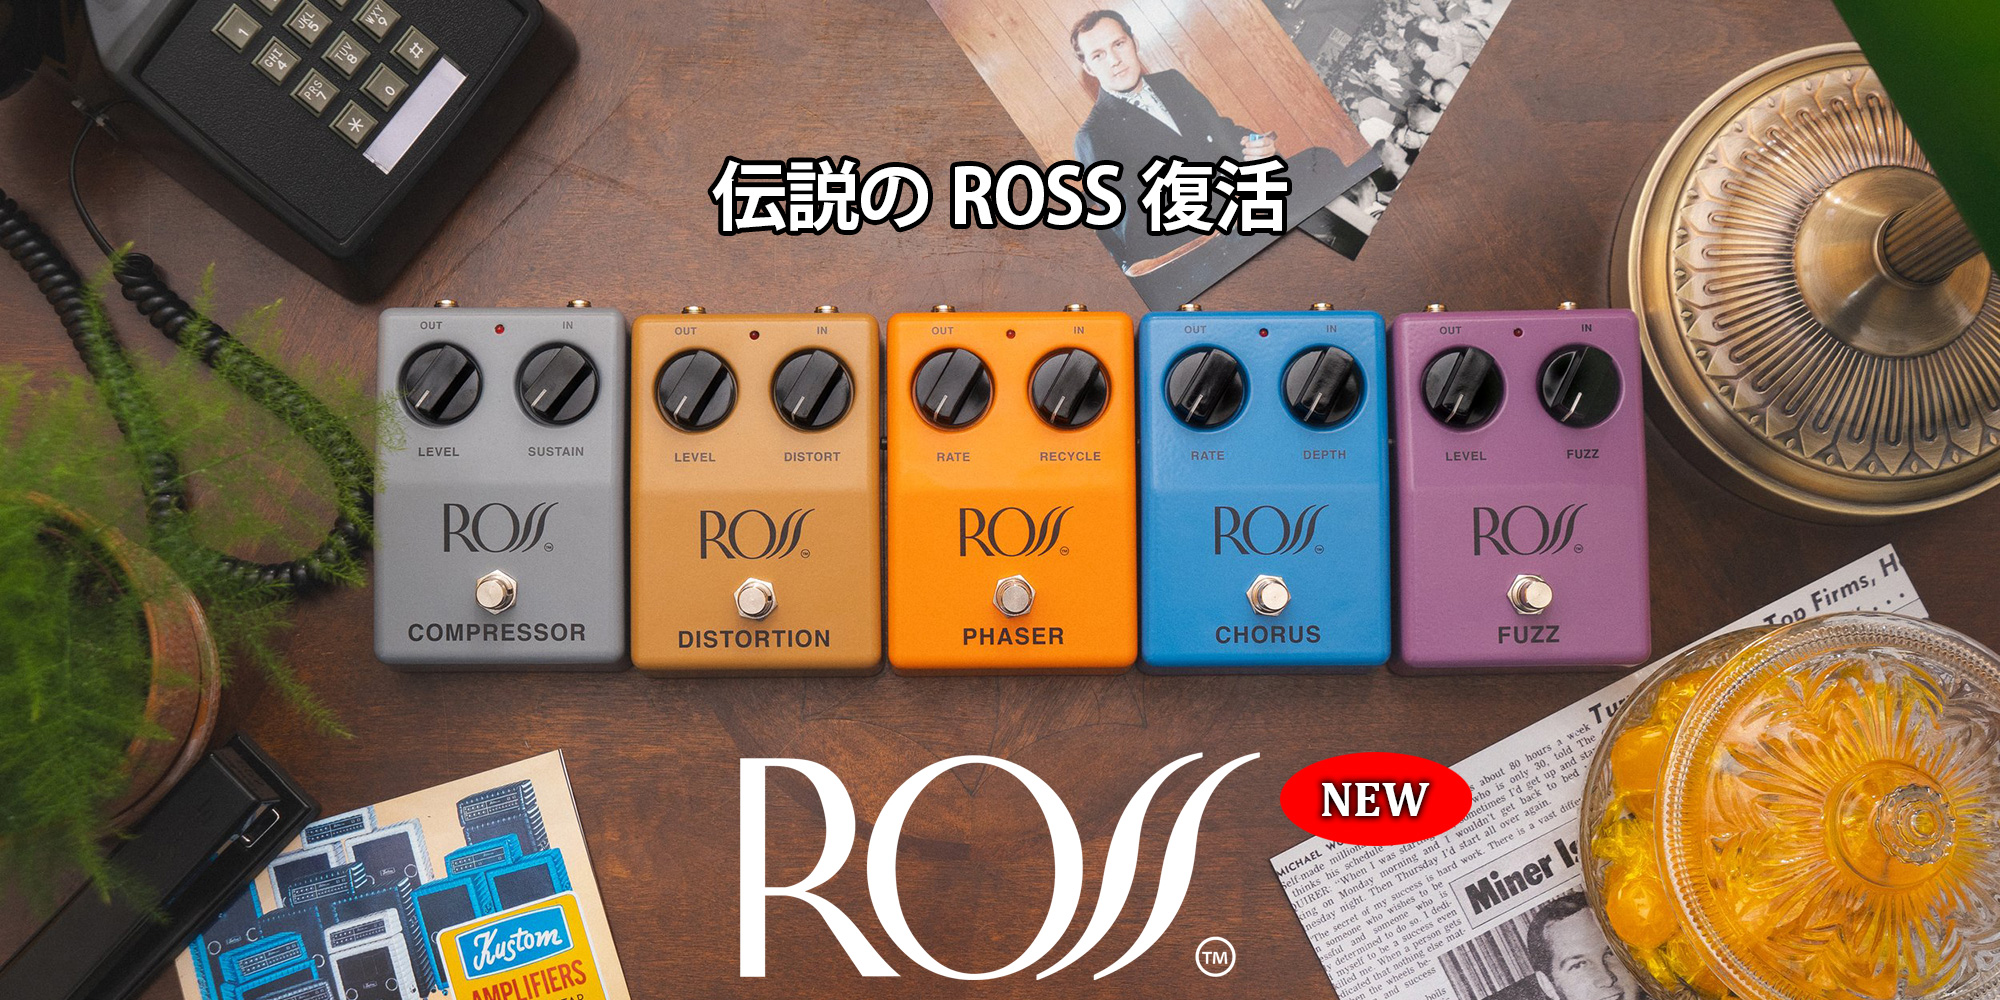 伝説のROSSブランドが復活！ ROSS 新製品 5機種リリース